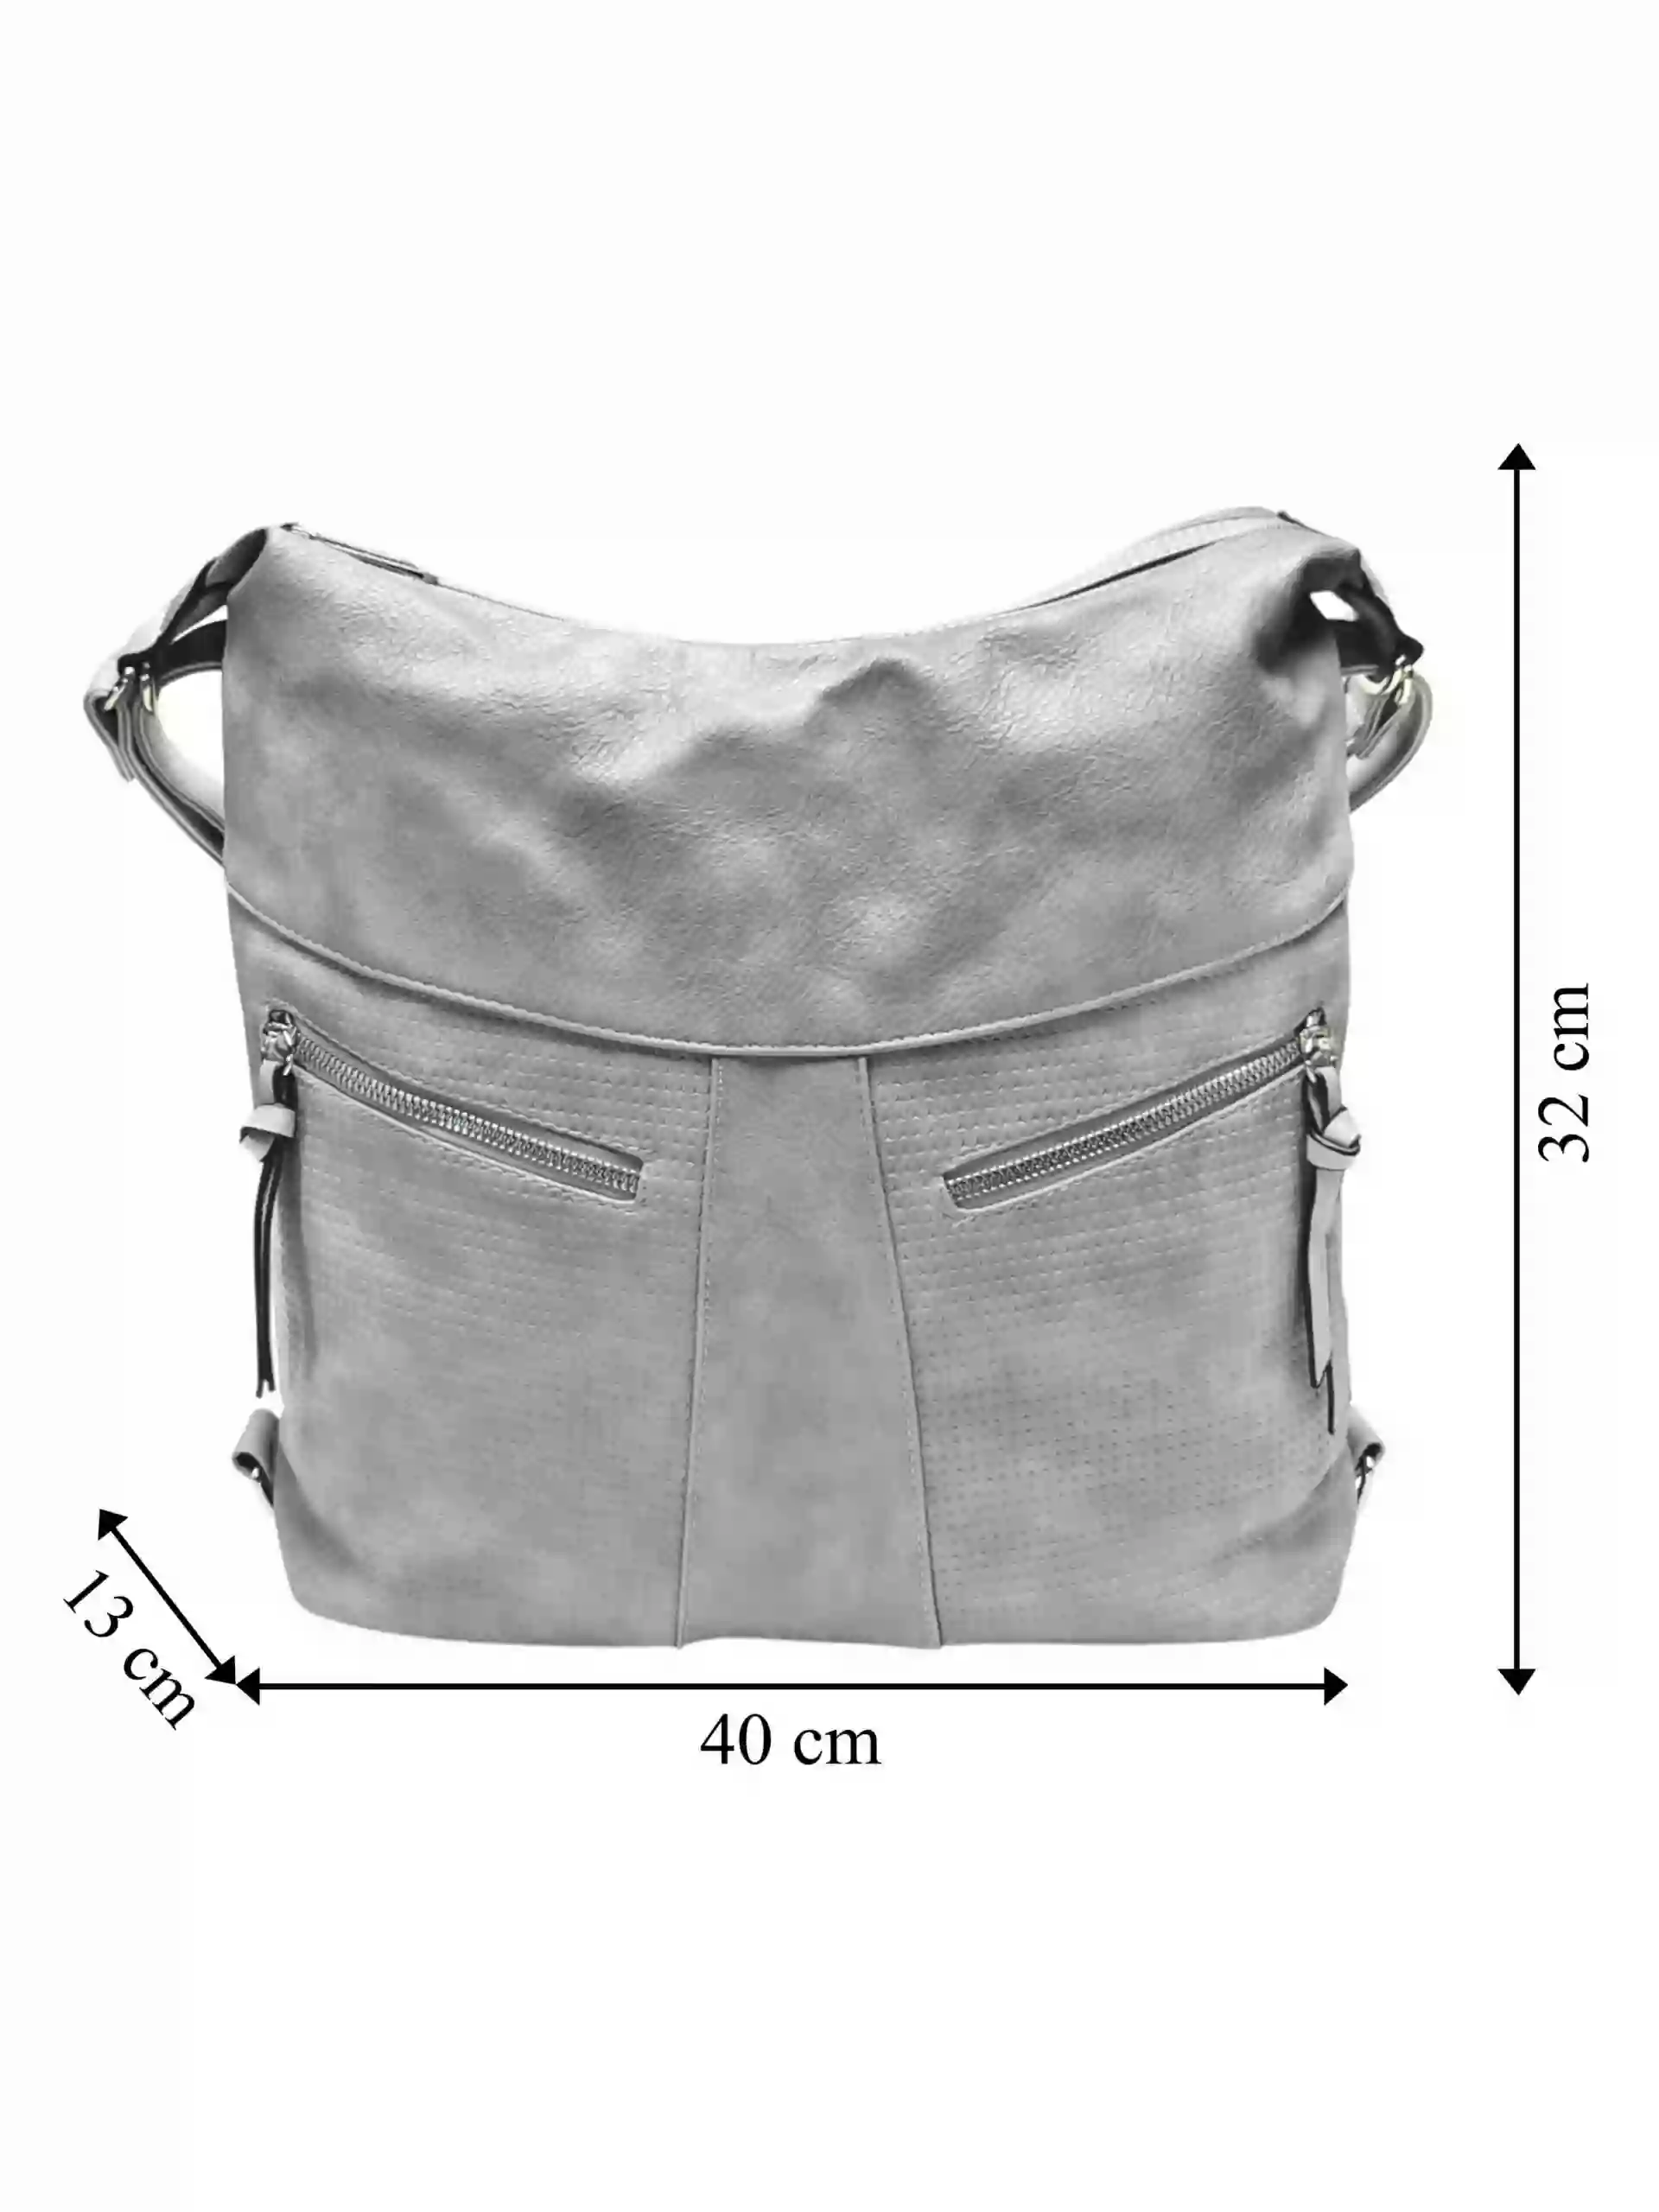 Velký světle šedý kabelko-batoh z eko kůže, Tapple, H18076, přední strana kabelko-batohu s rozměry